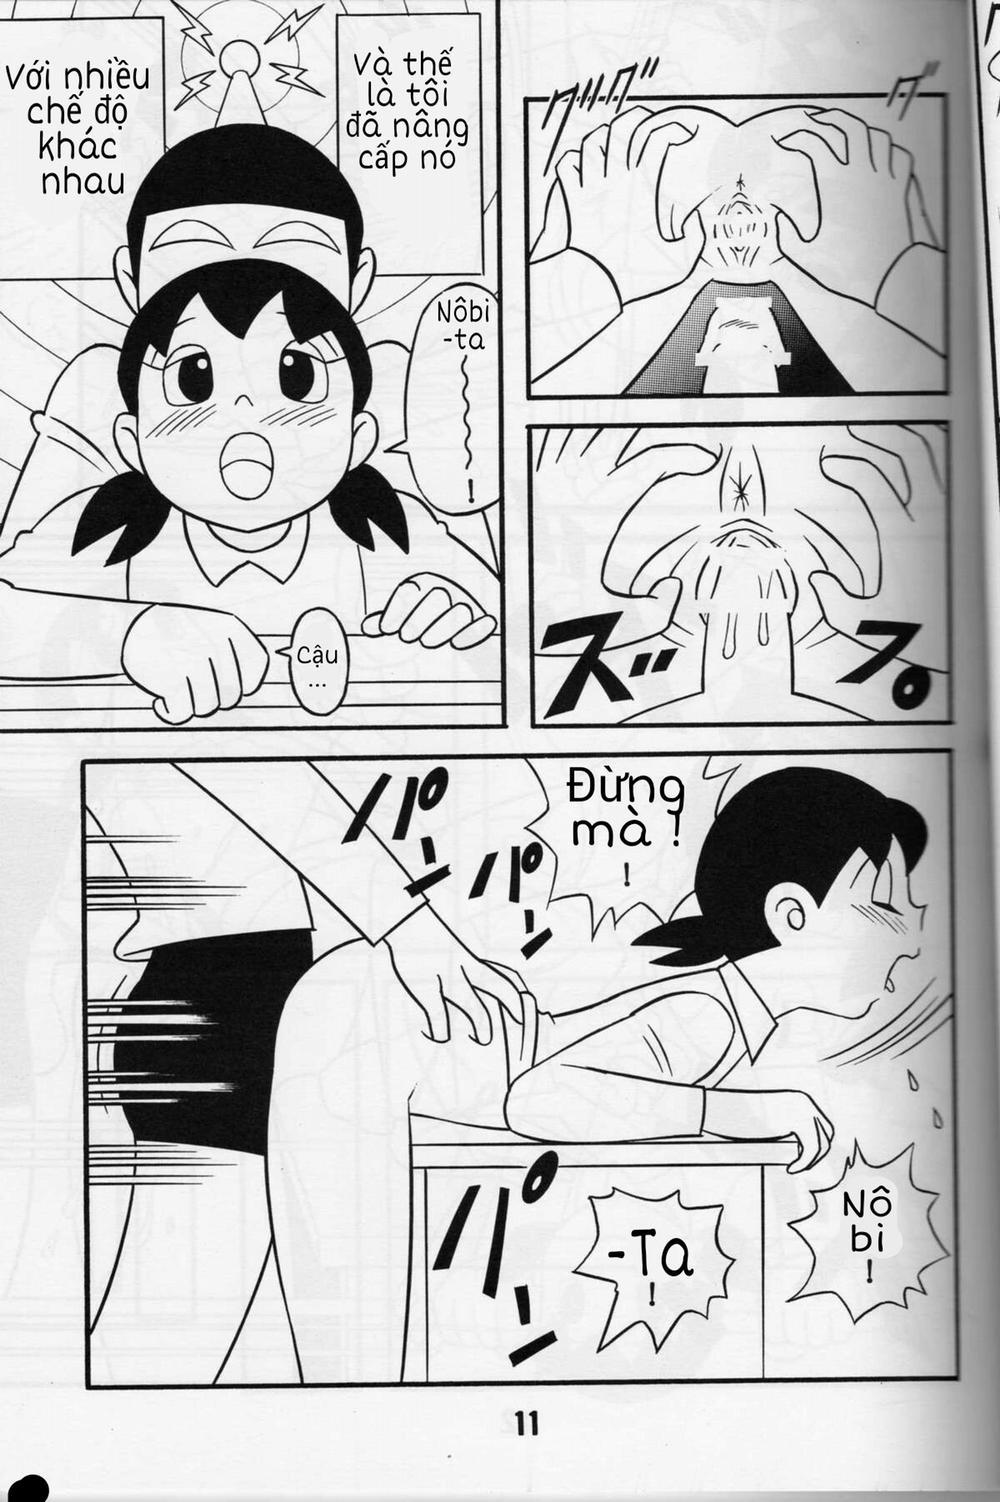 Tuyển Tập Doraemon Doujinshi 18+ Chương 1 M u c a t t c Trang 10